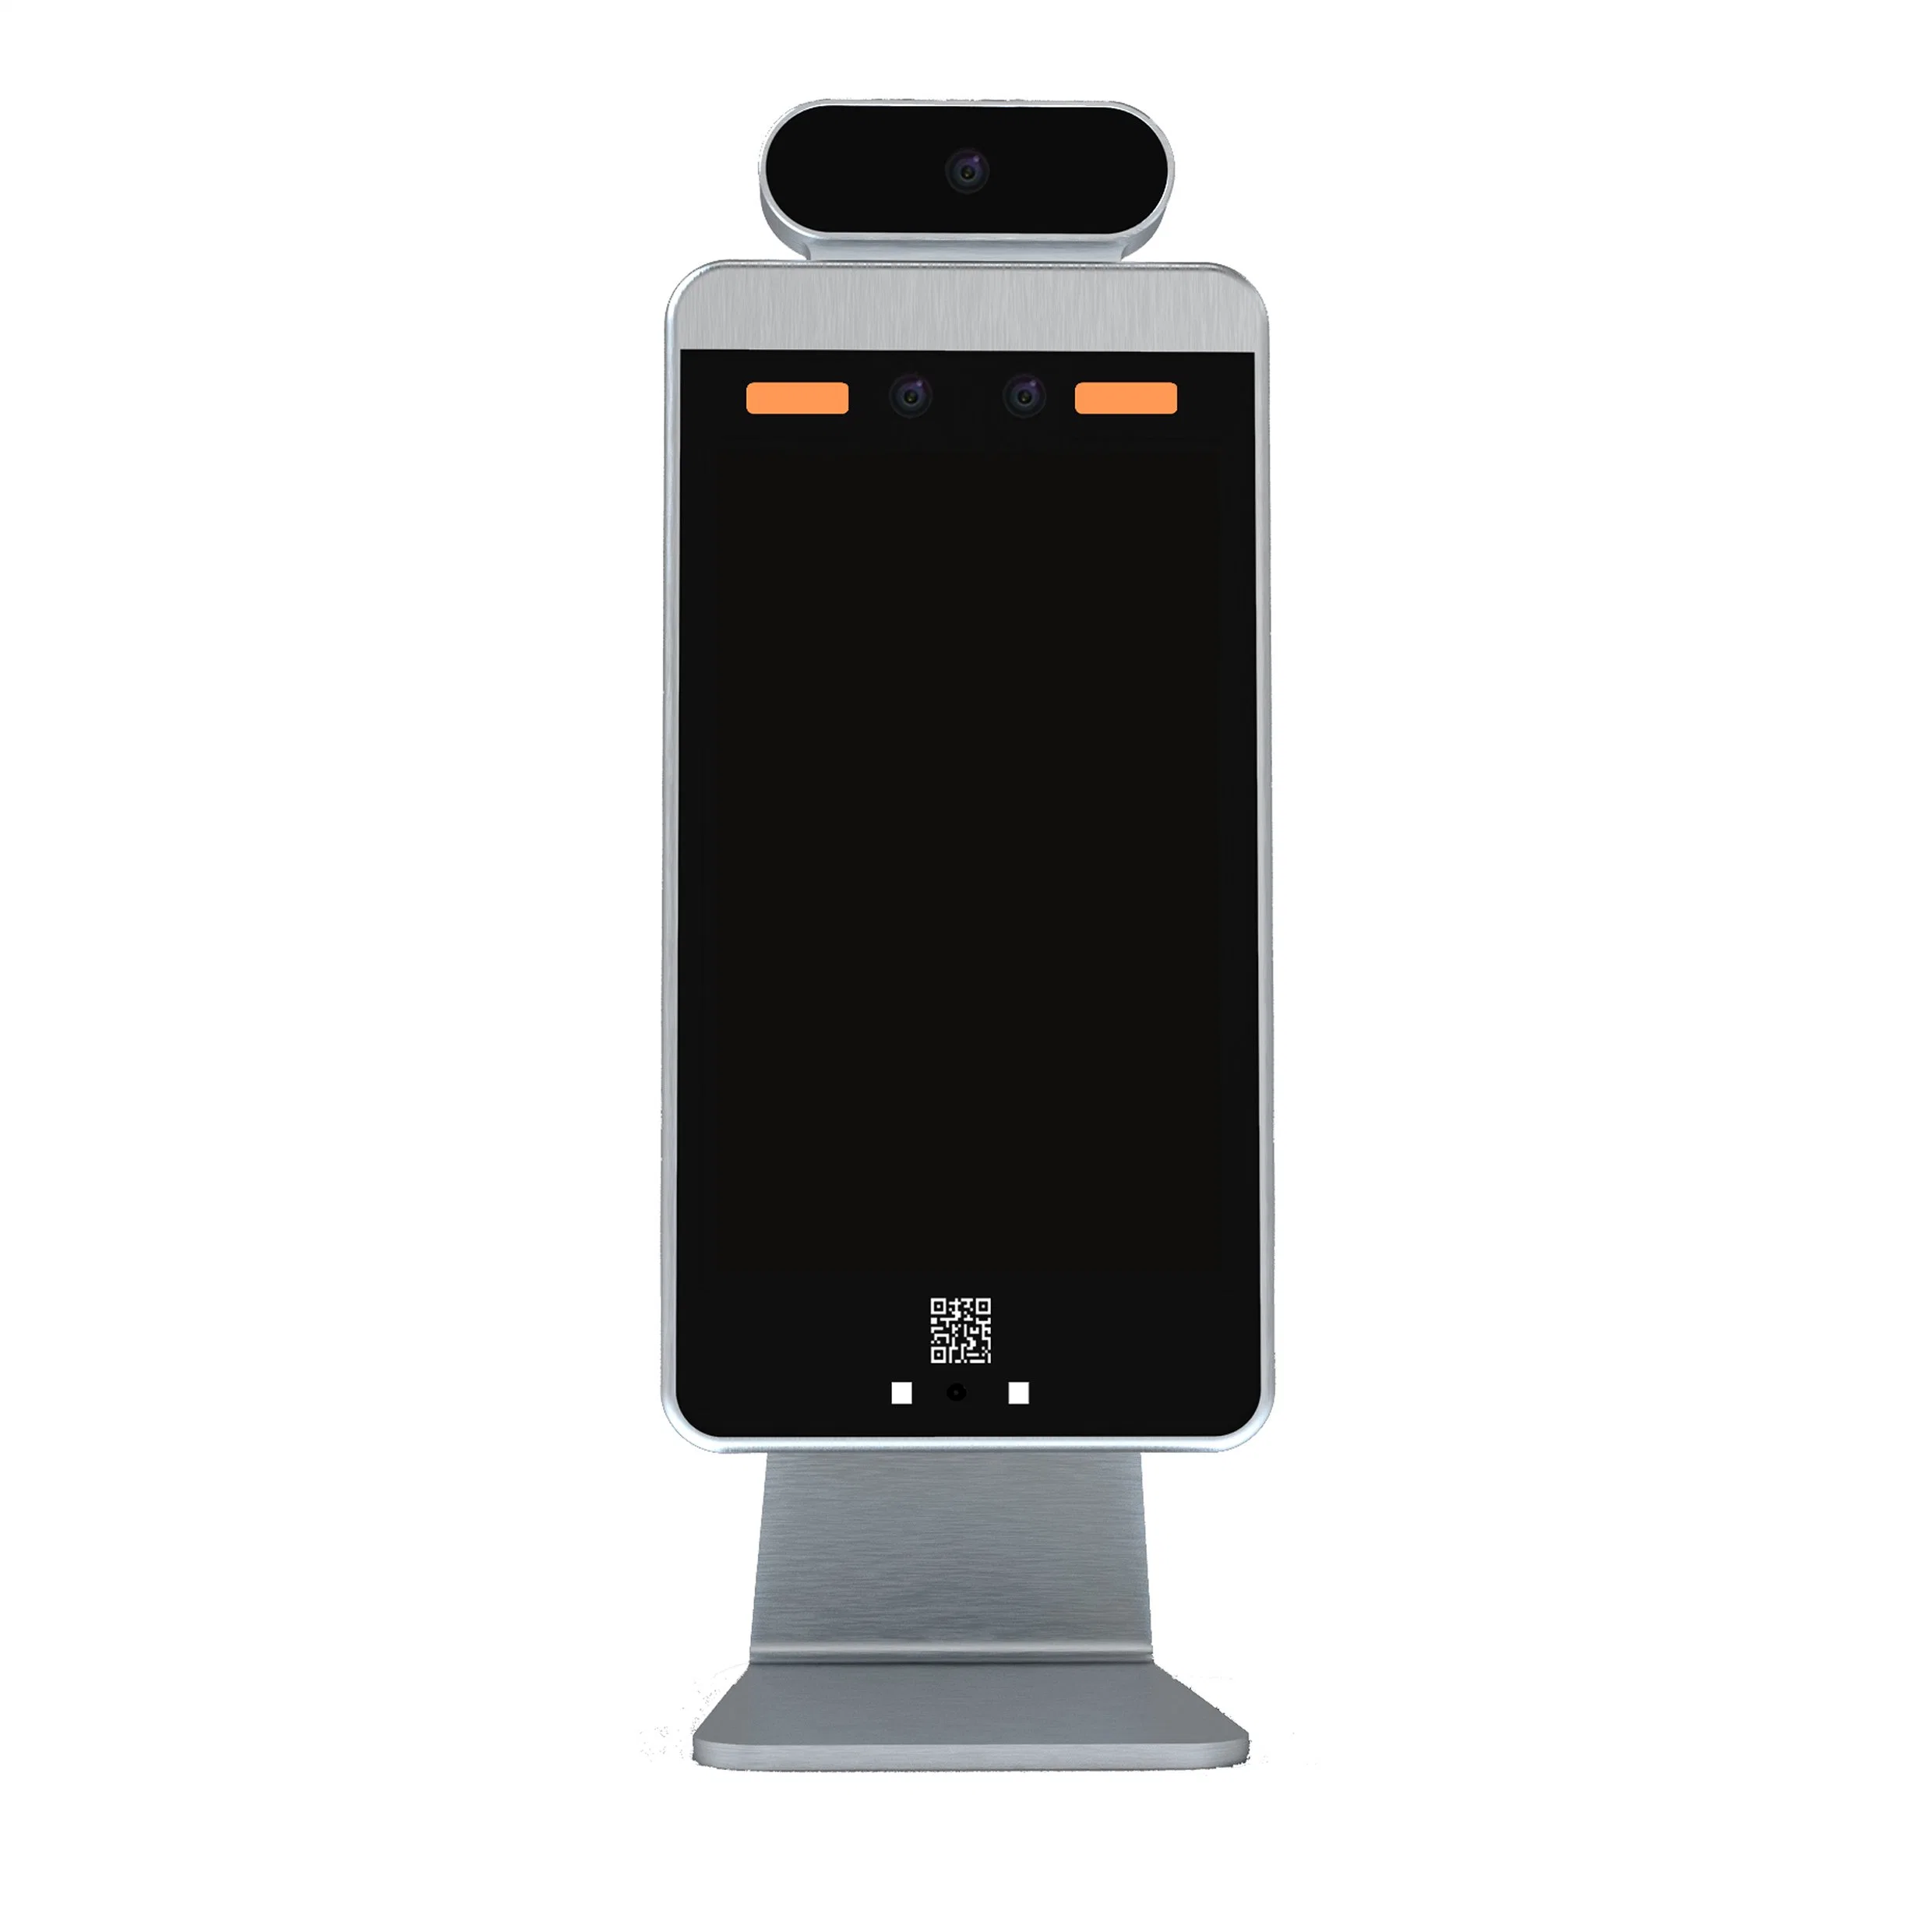 Körpertemperatur-Detektor Gesichtserkennung Panel Access Control EU Digital Gesundheit QR Code Reader Hongkong EVT APP QR Code Thermal Kamerascanner